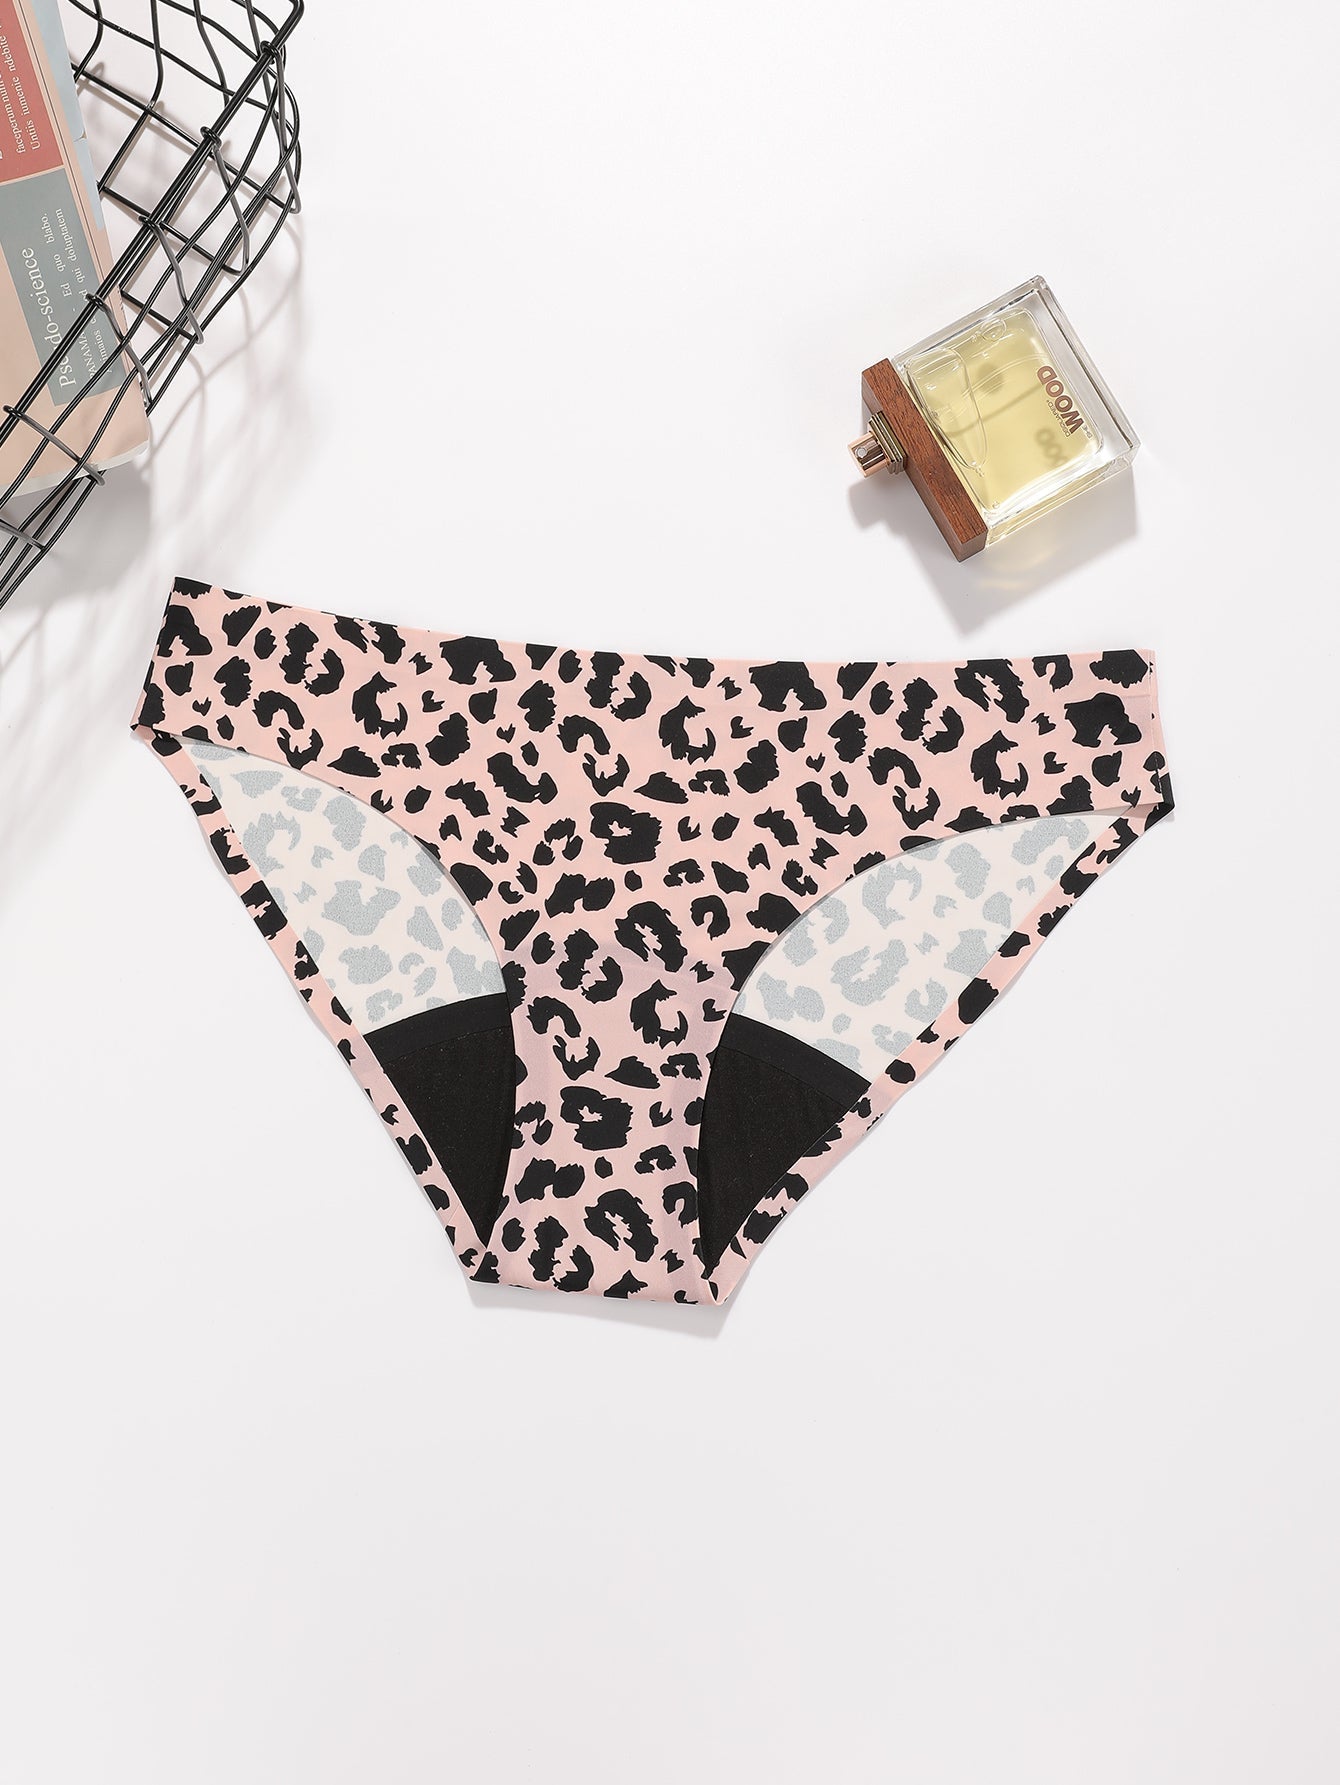 Leopard Seamless Period Underwear for Women Leak Proof Overnight Menstrual Panty Sai Feel